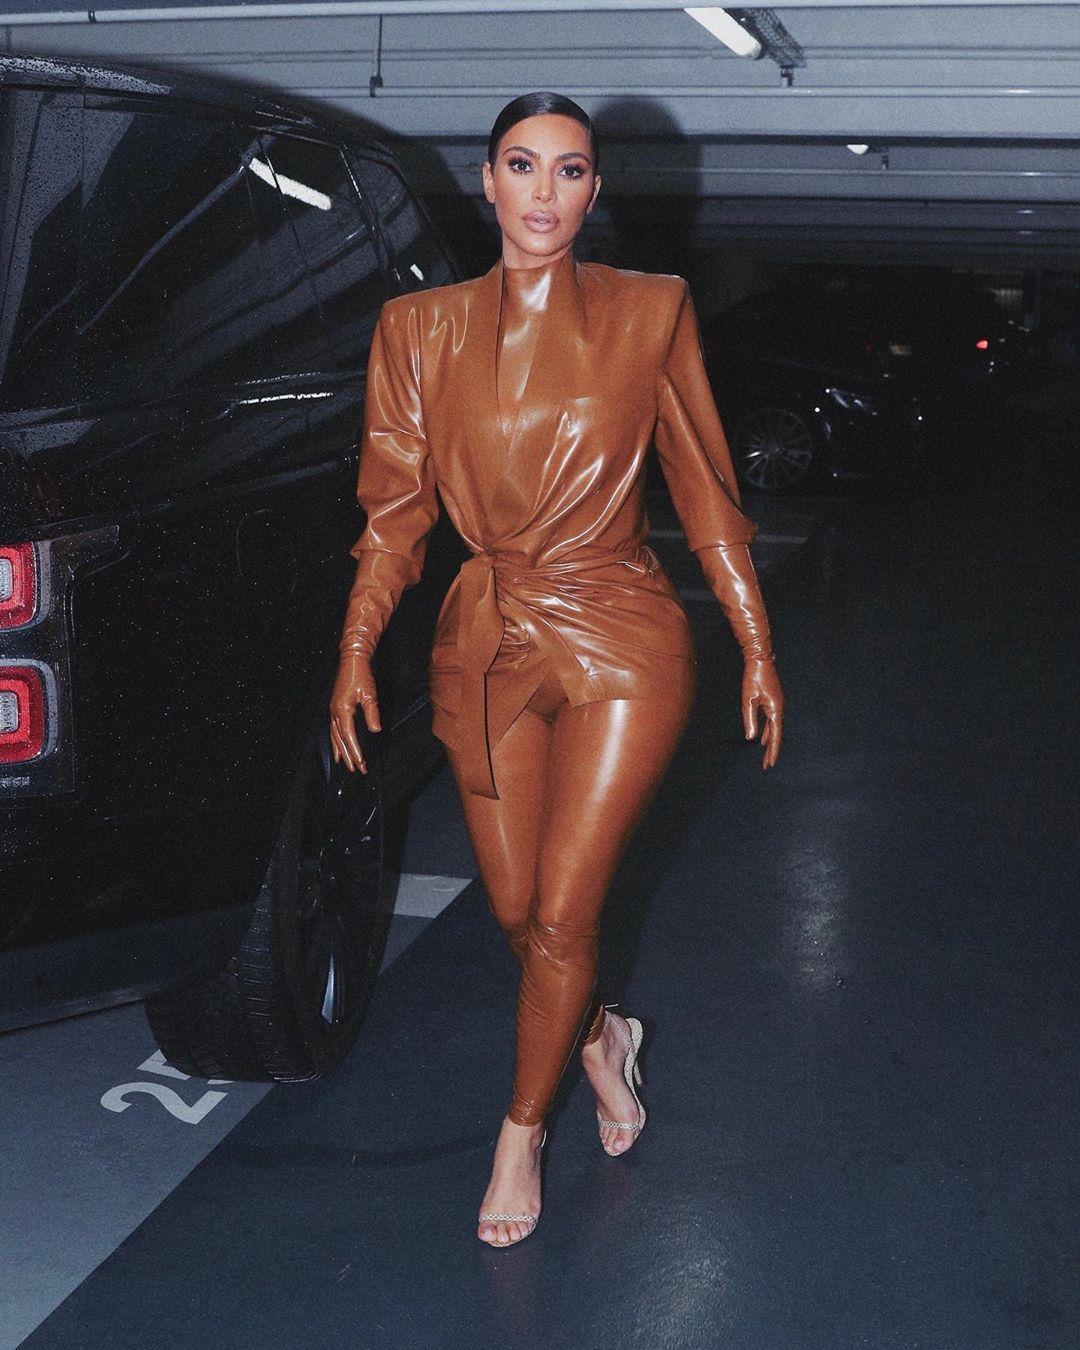 Como no combinar ropa: el look ultra ajustado de Kim Kardashian